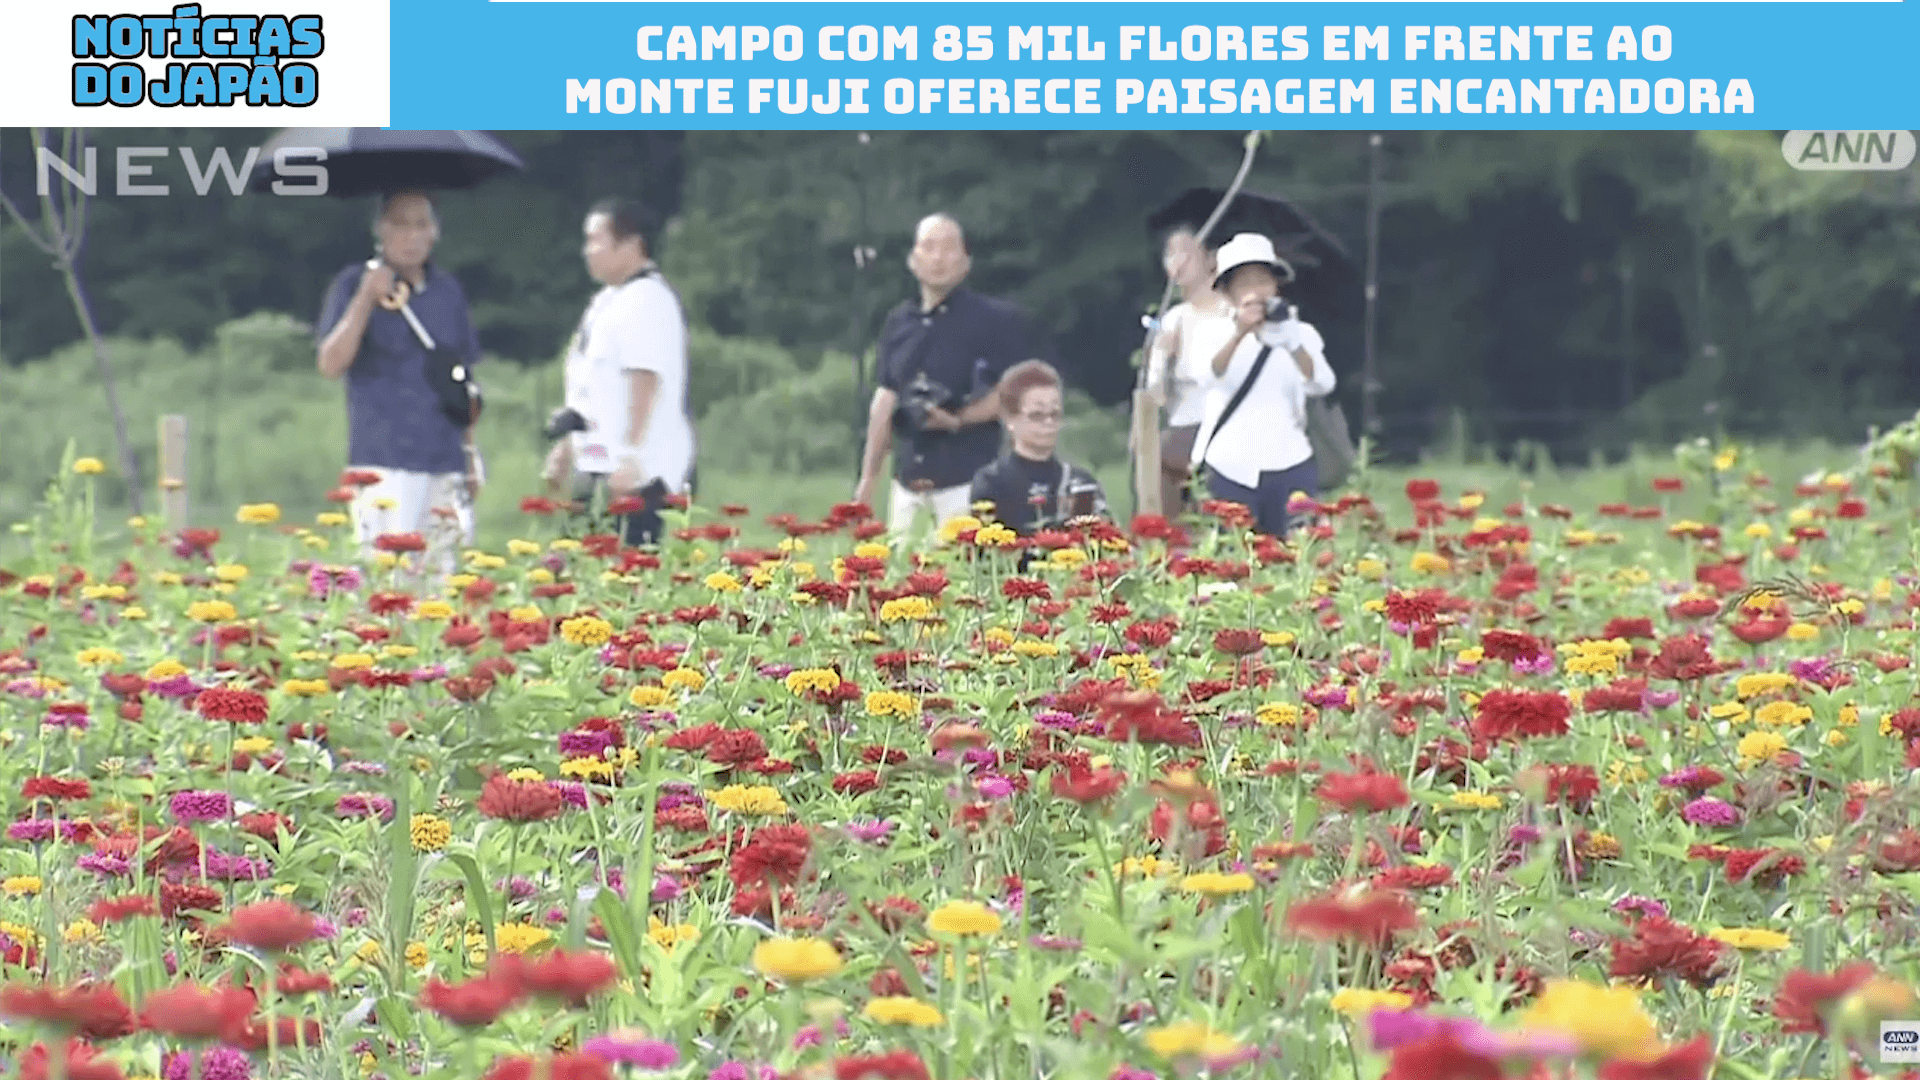 Campo com 85 mil flores em frente ao Monte Fuji oferece paisagem encantadora